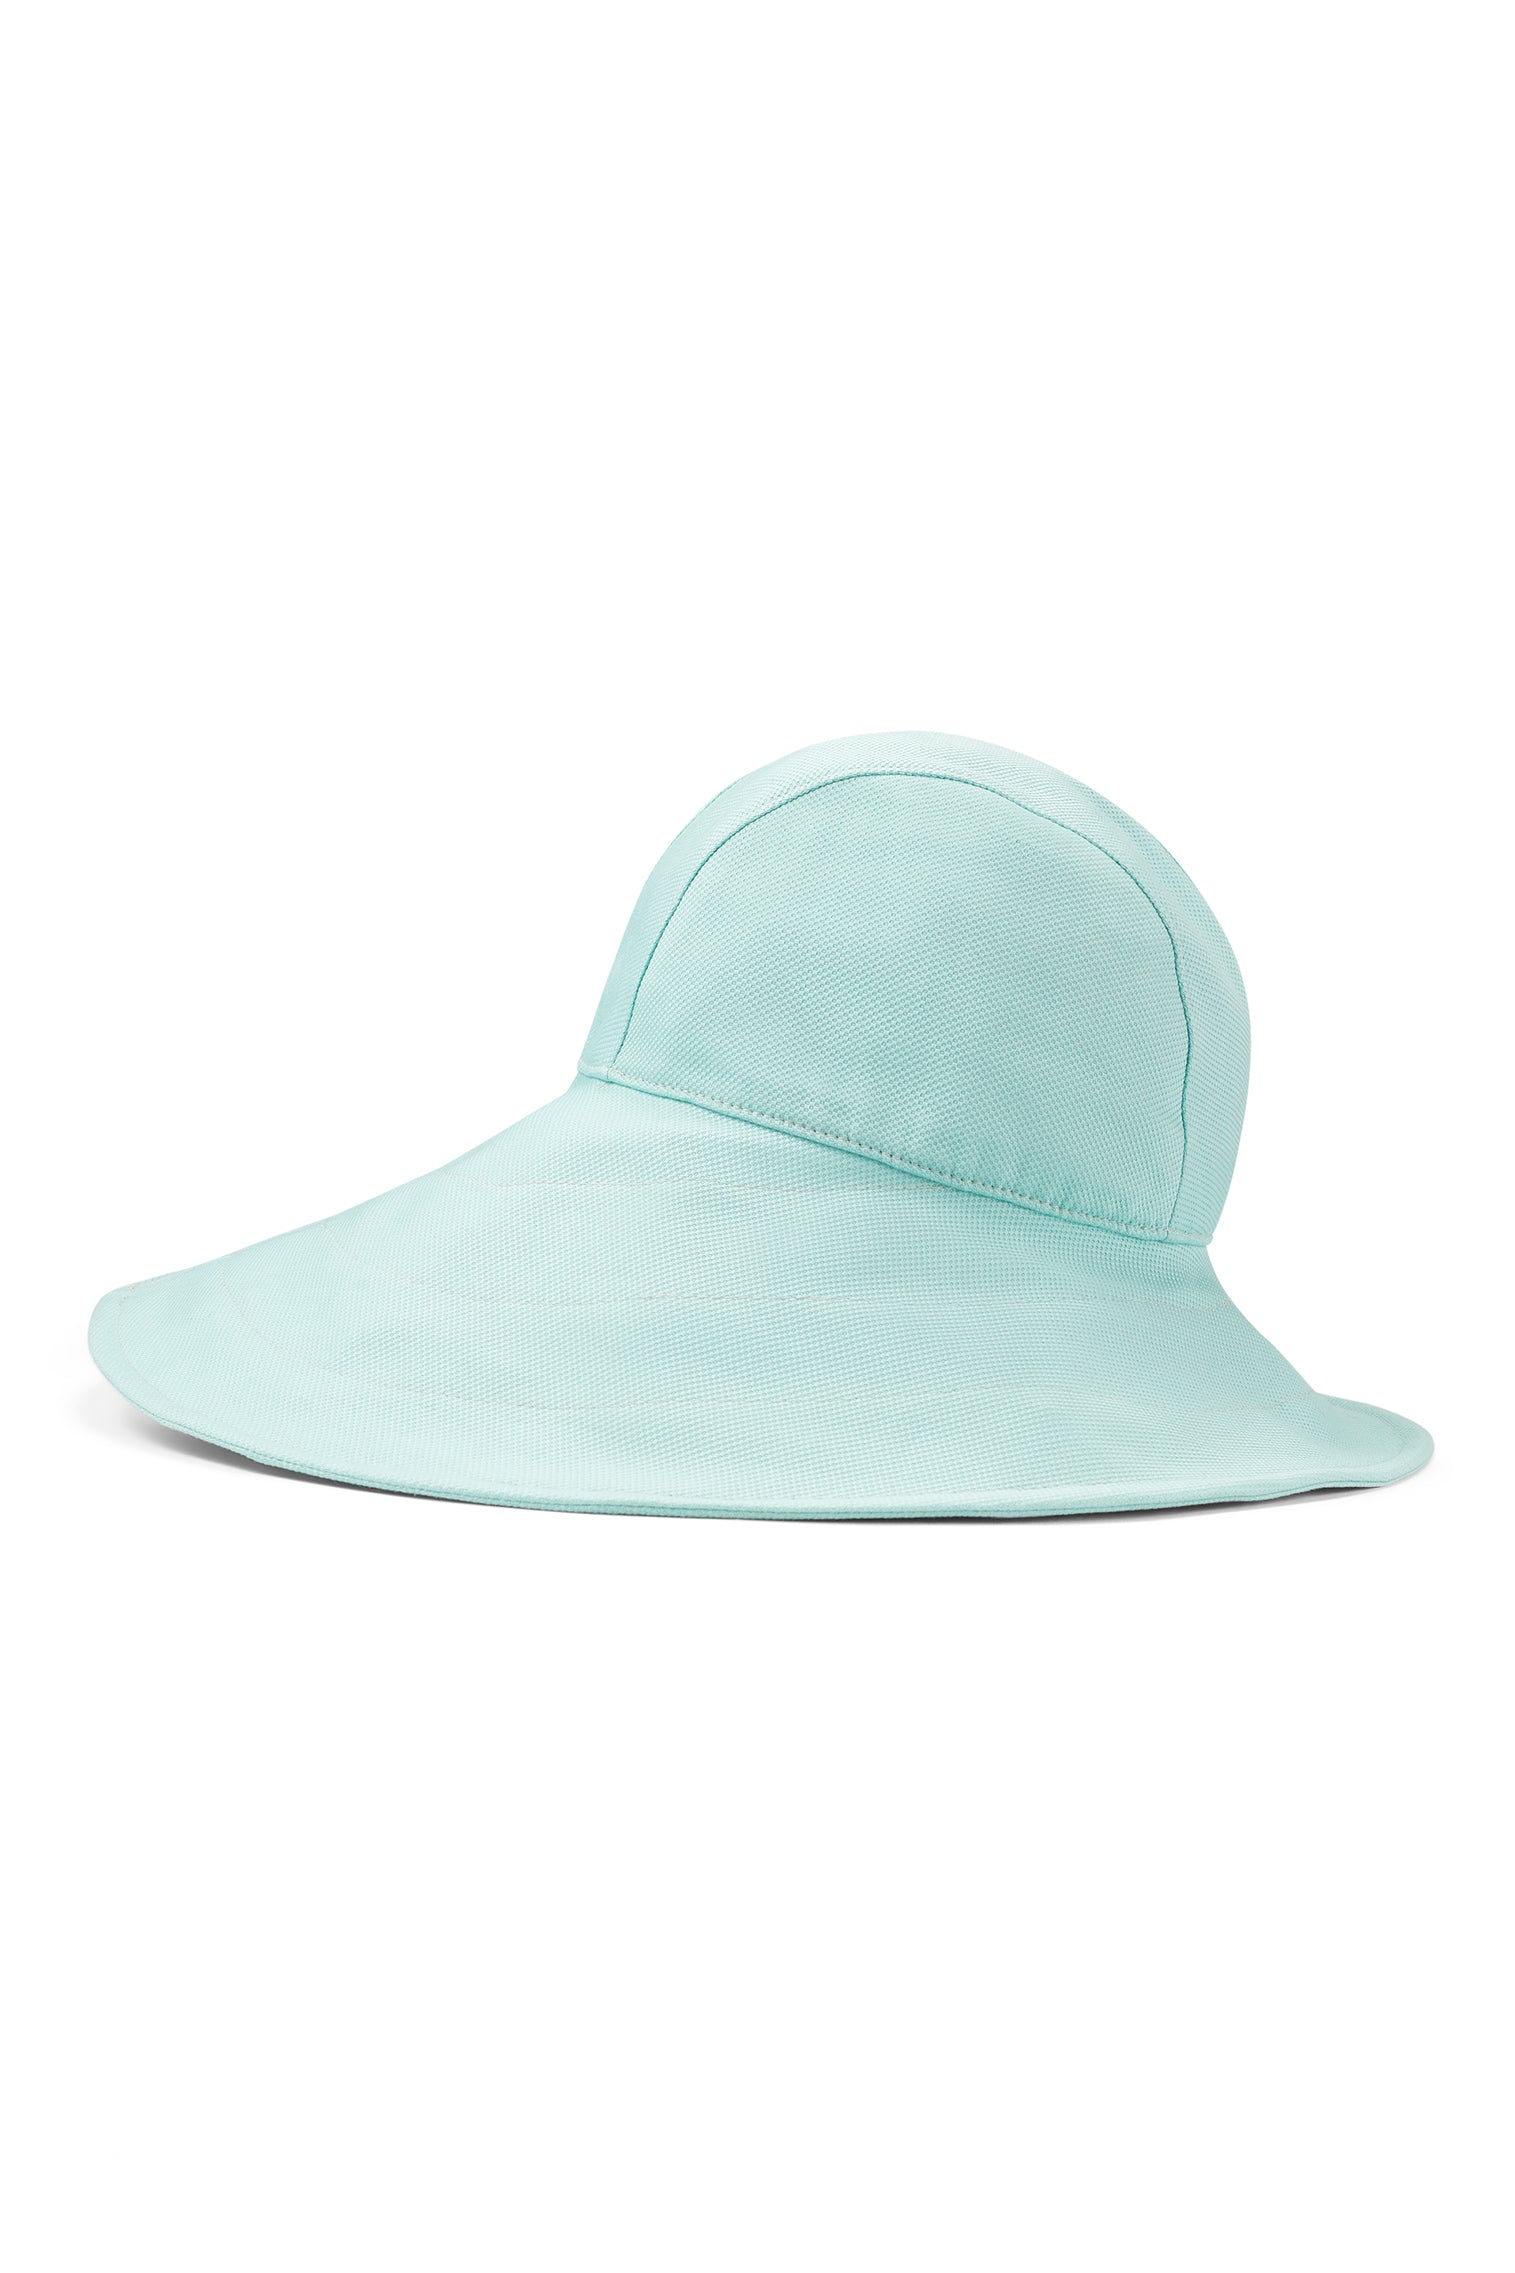 Elowyn Sou'Wester Sun Hat - Sun Hats & Boaters - Lock & Co. Hatters London UK